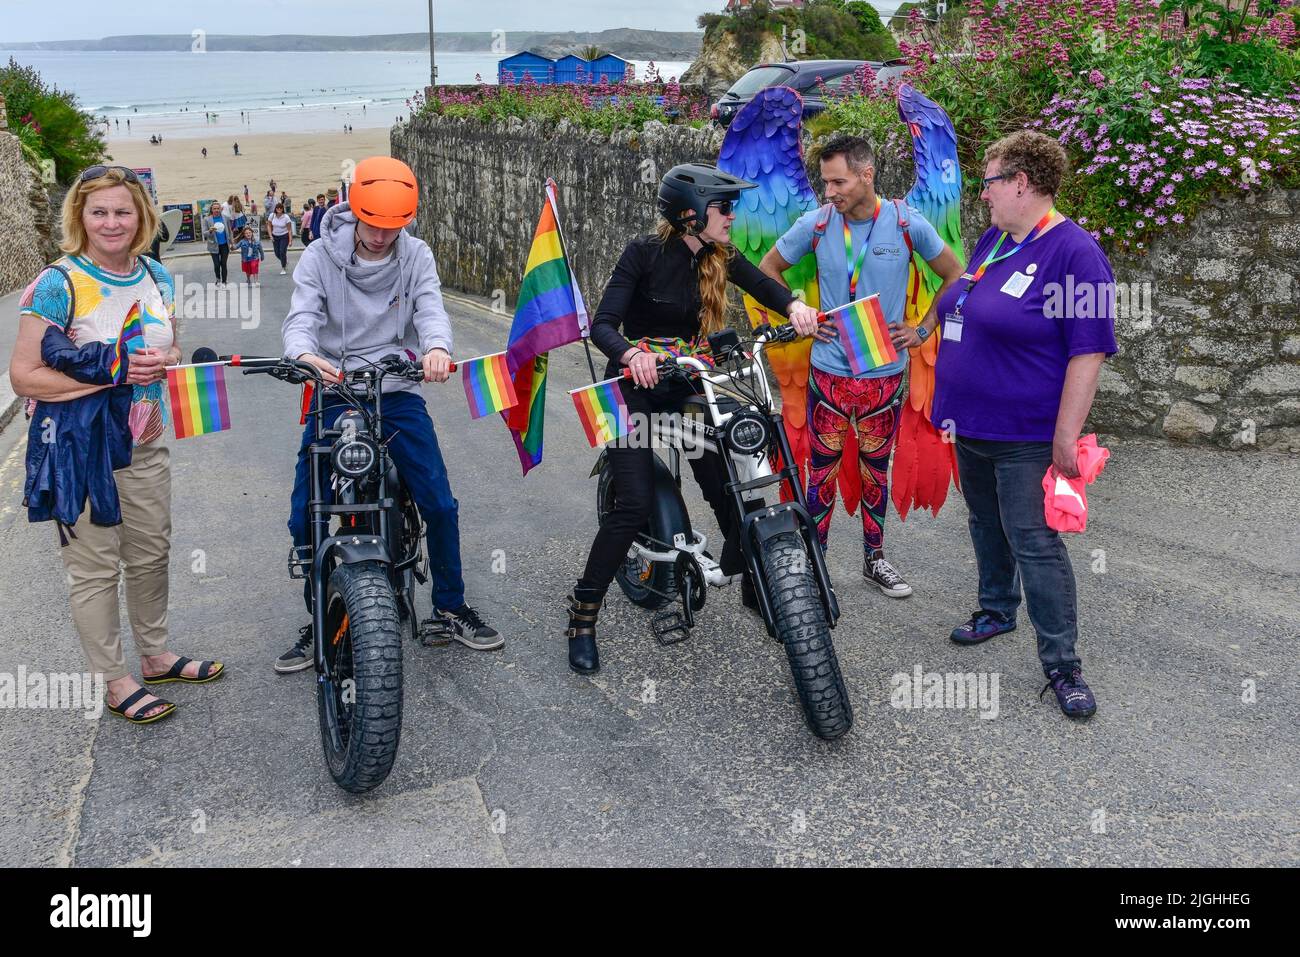 Les coureurs utilisant des vélos électriques Super 73 au début de la vibrante Cornouailles colorées prides Pride parade dans le centre-ville de Newquay au Royaume-Uni. Banque D'Images